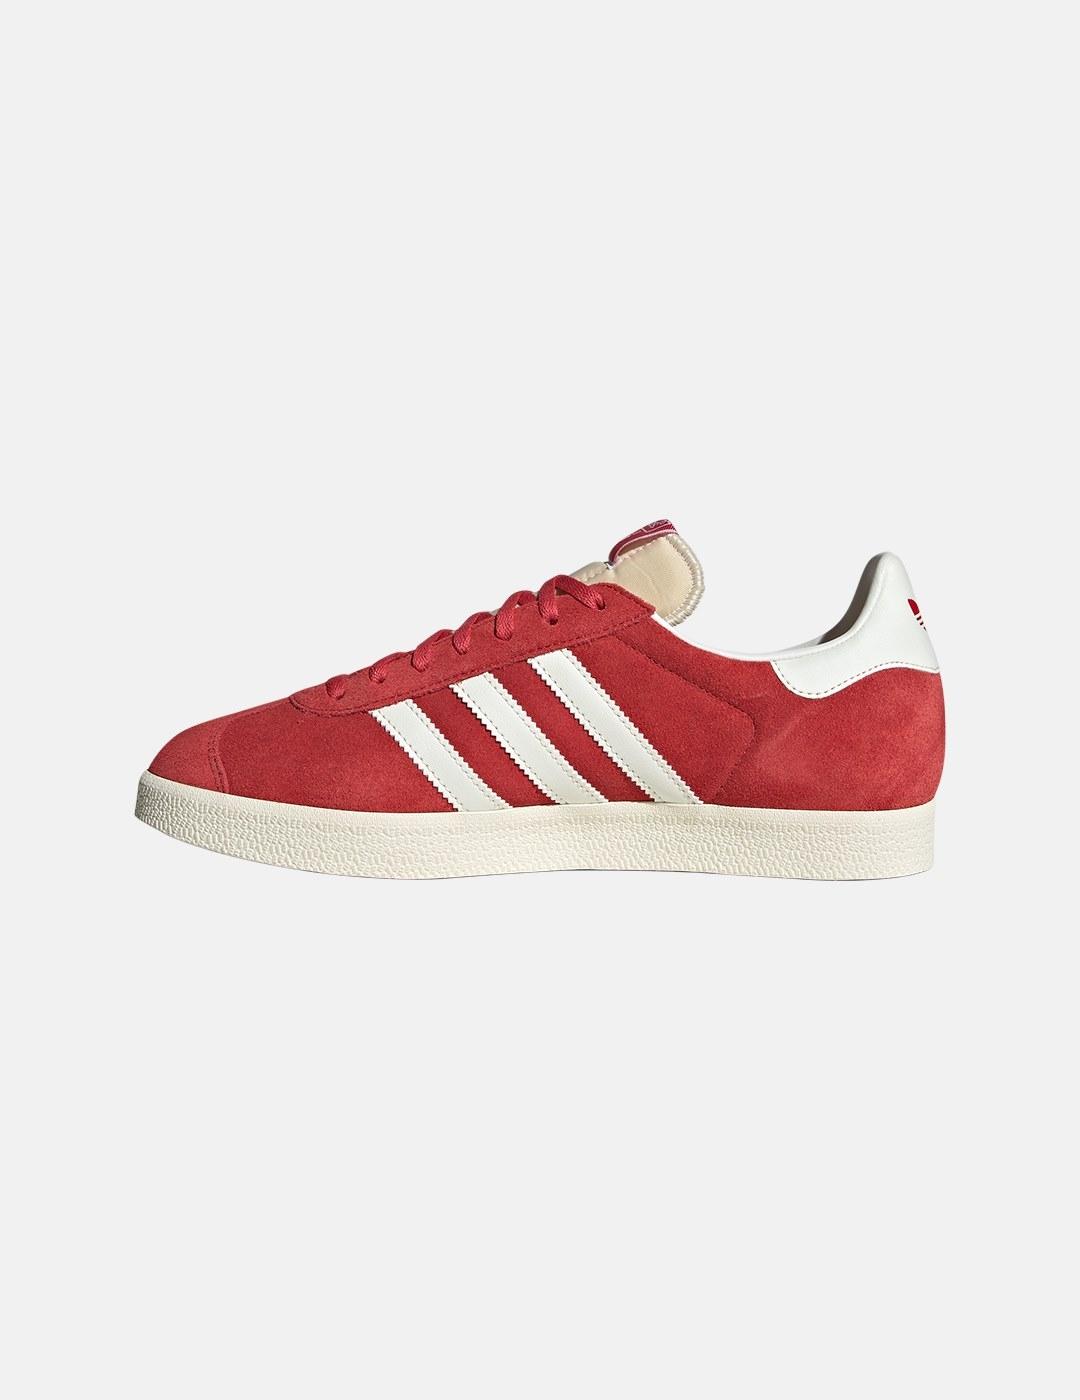 Zapatillas Adidas Gazelle Rojo